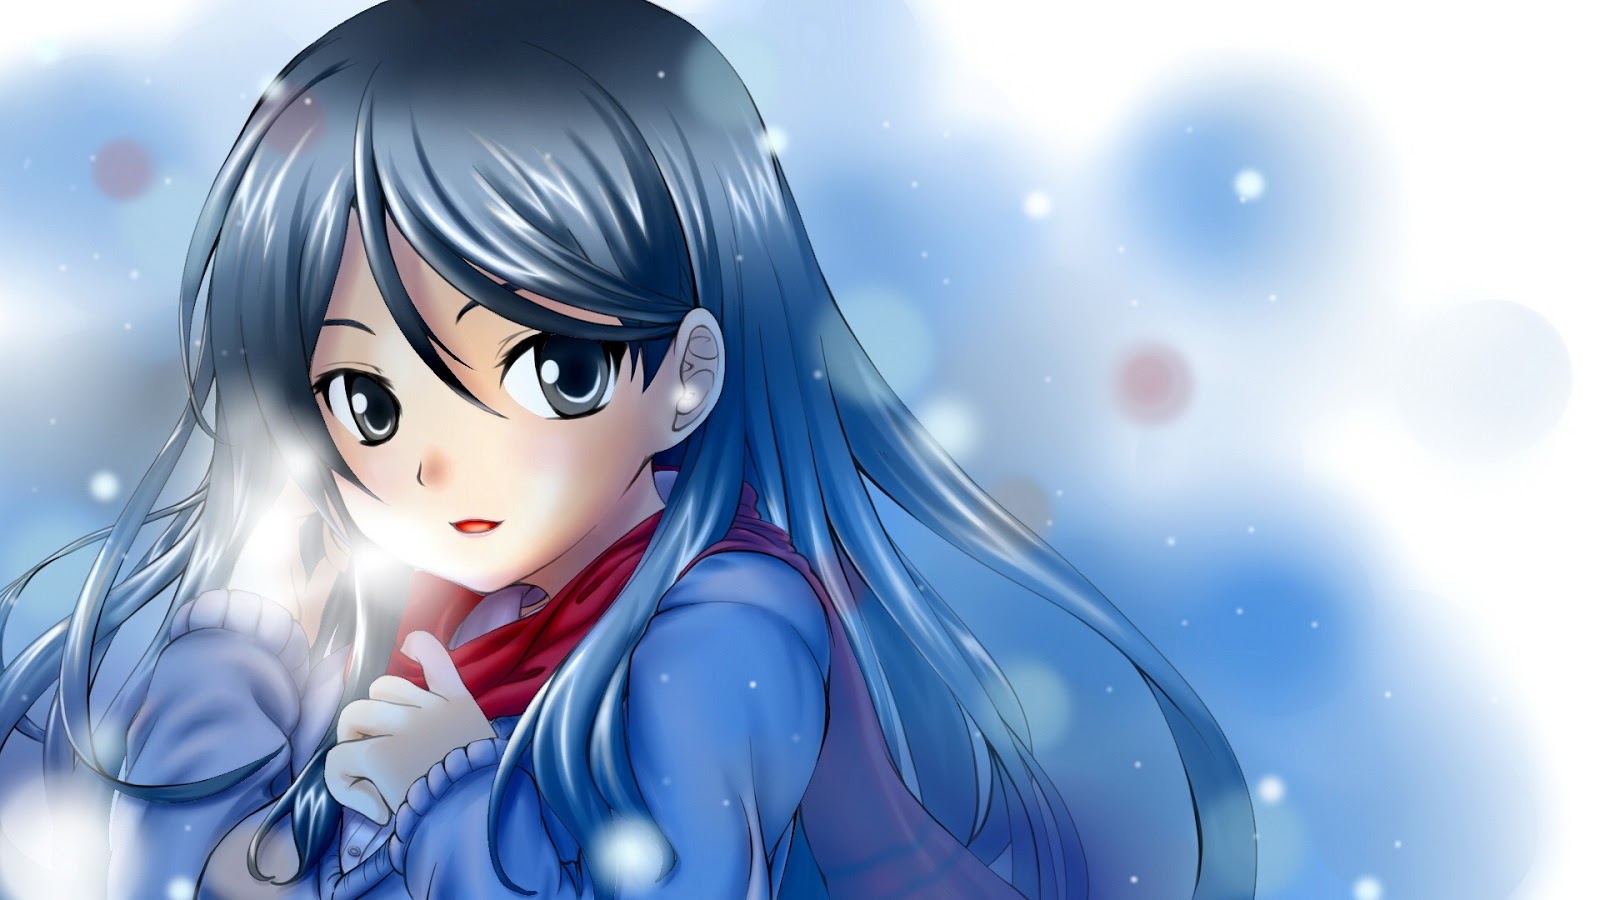 Beautiful Winter Anime Girl